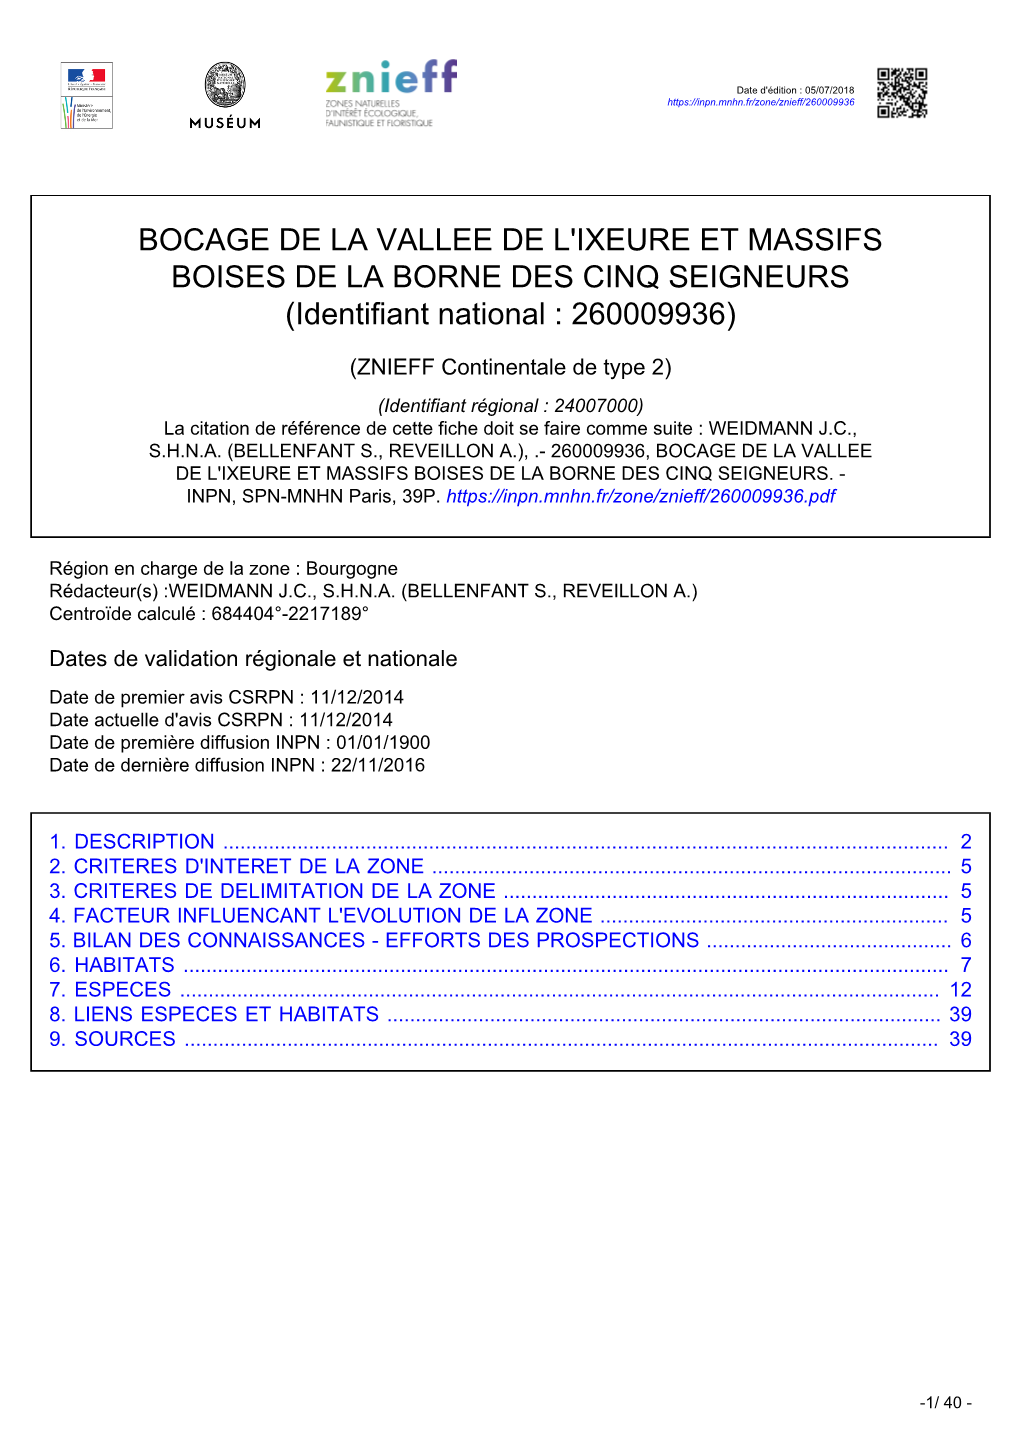 BOCAGE DE LA VALLEE DE L'ixeure ET MASSIFS BOISES DE LA BORNE DES CINQ SEIGNEURS (Identifiant National : 260009936)